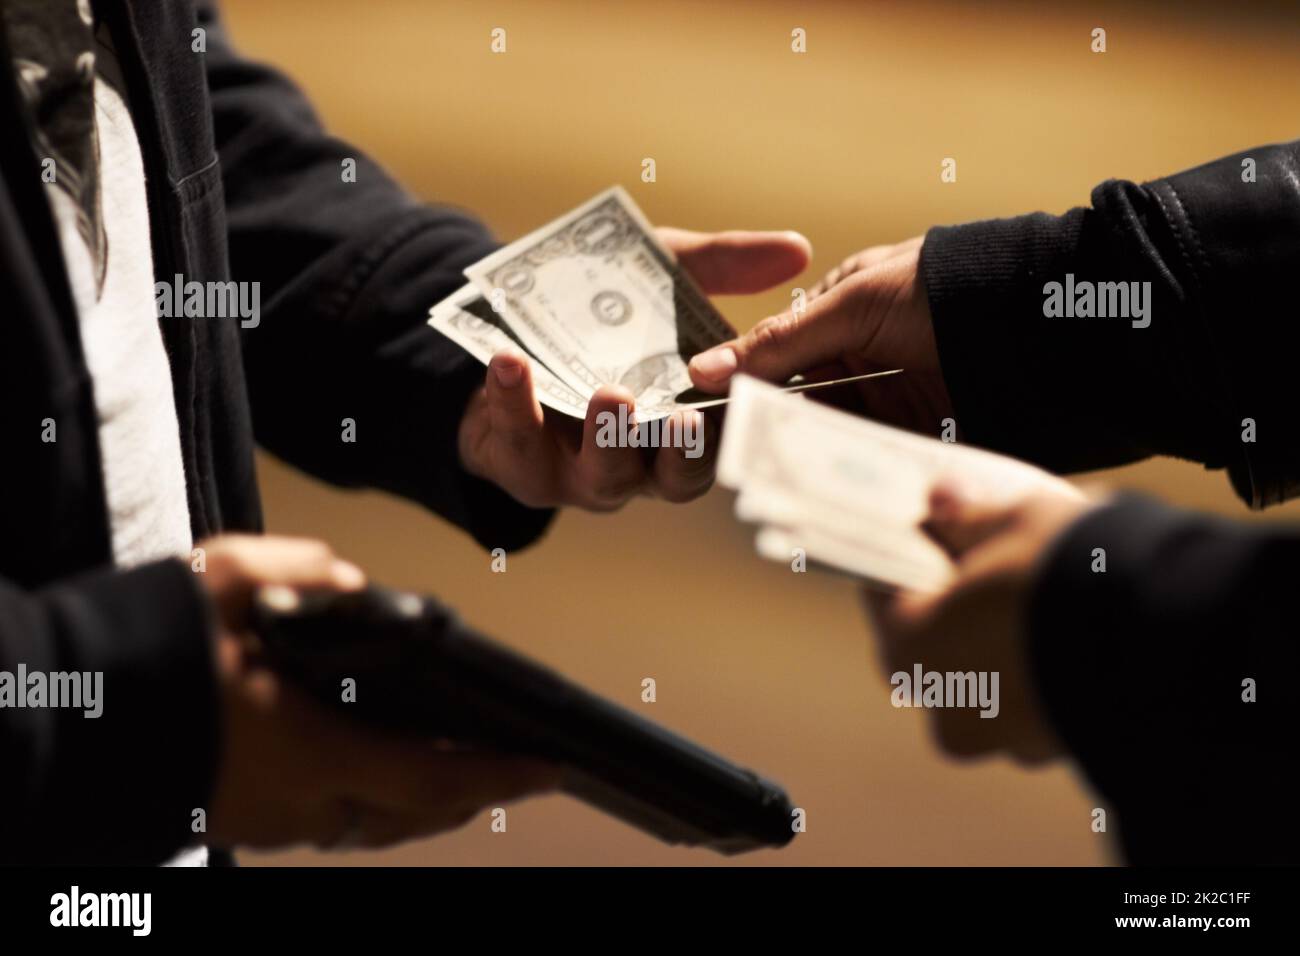 Abschluss des Geschäfts. Hände, die Bargeld halten, und eine Waffe, die Geld zwischen ihnen weitergibt. Stockfoto